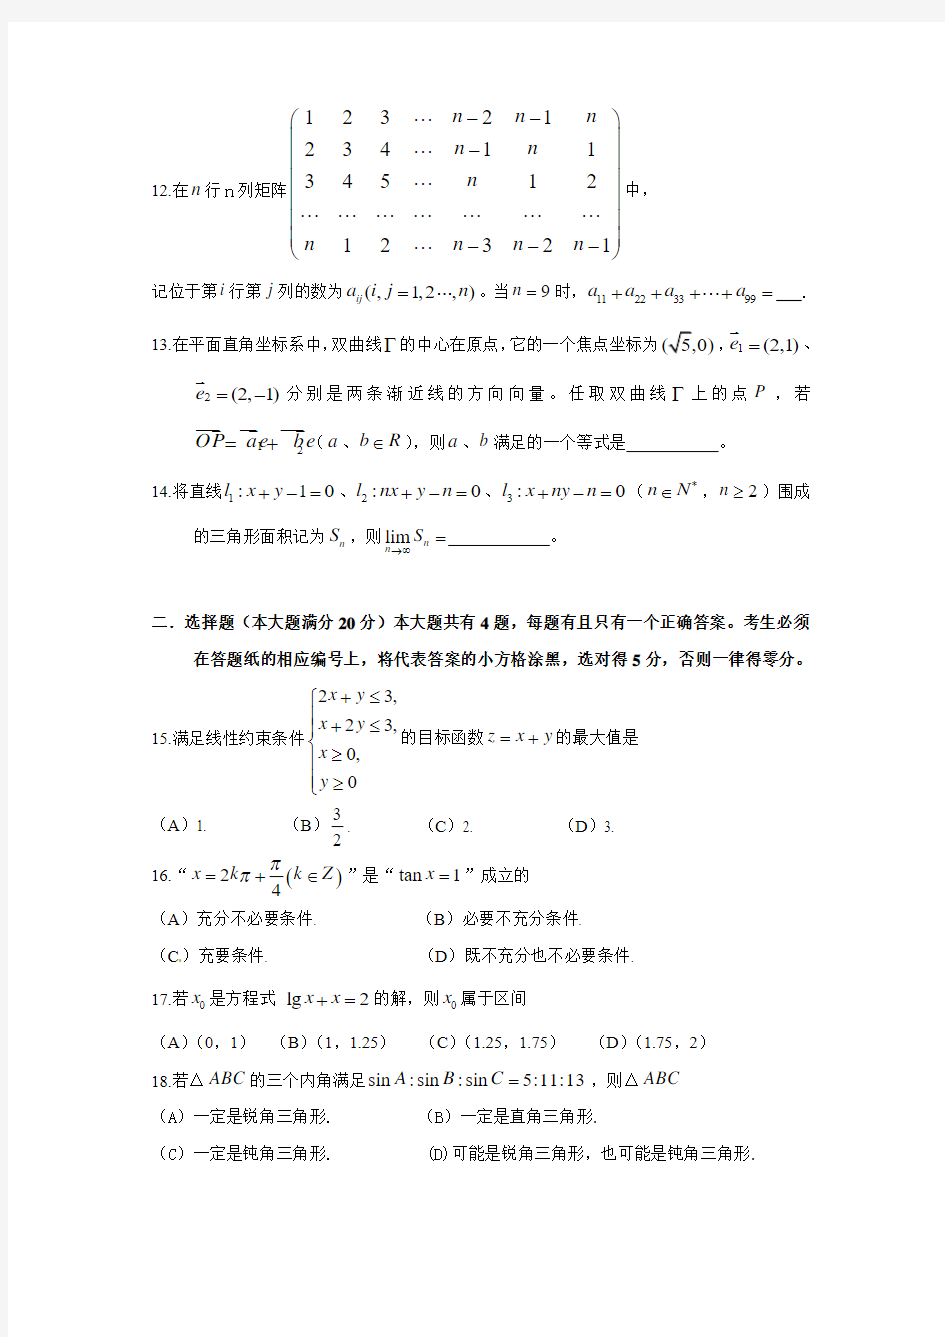 2010年高考文科数学(上海)卷